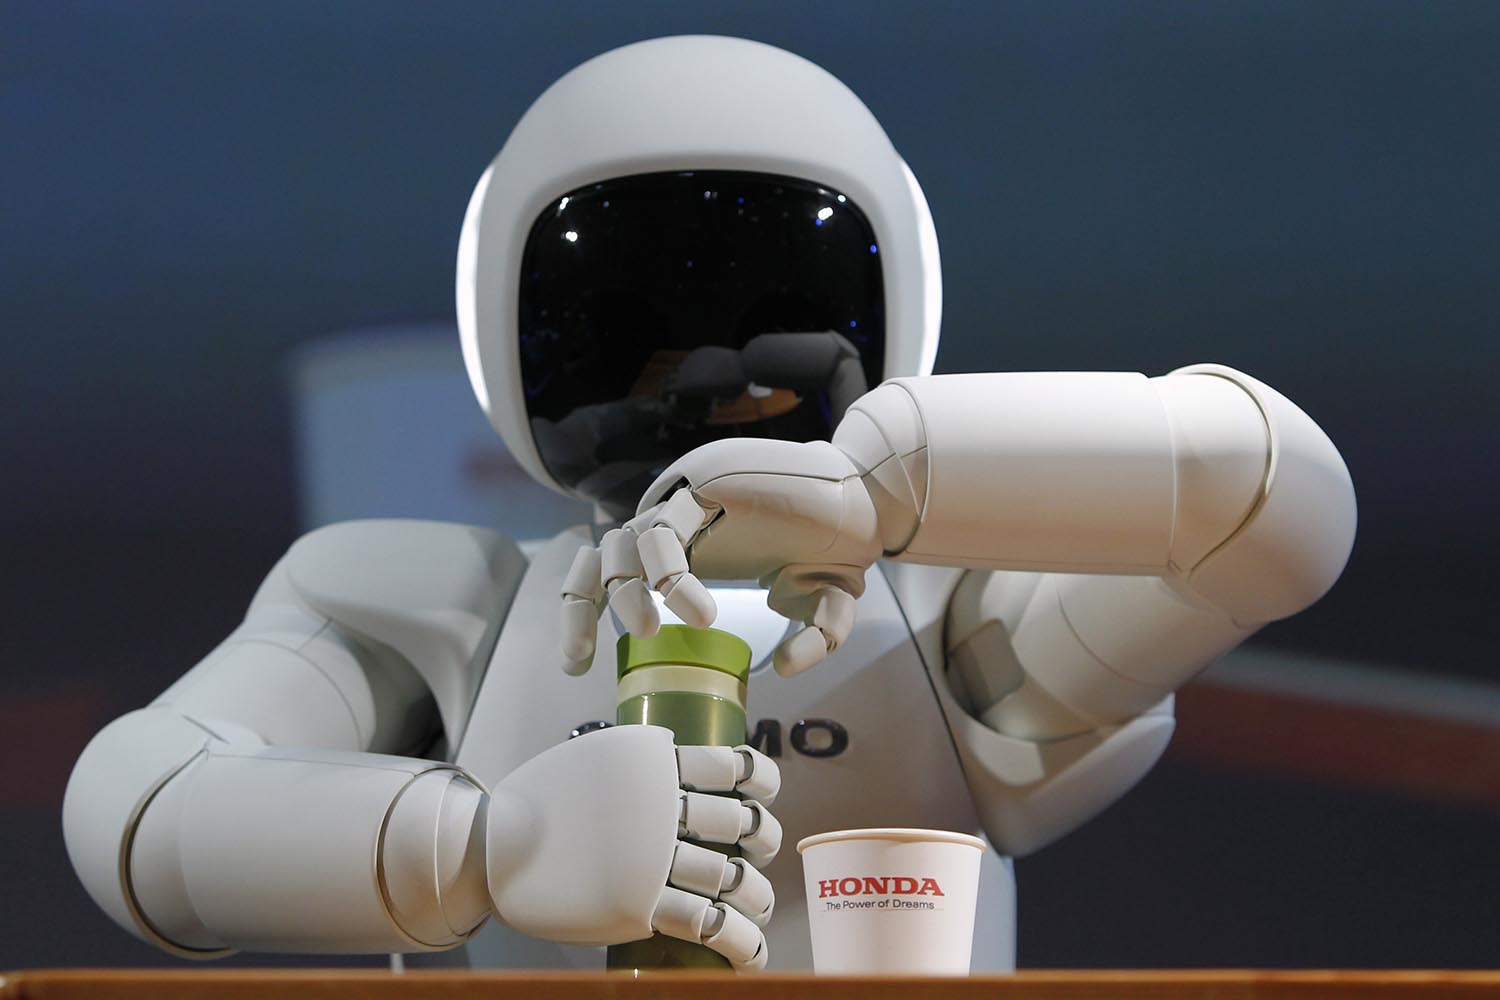 Especial mundo robot. Asimo, desarrollado por Honda, es el robot humanoide más avanzado del mundo